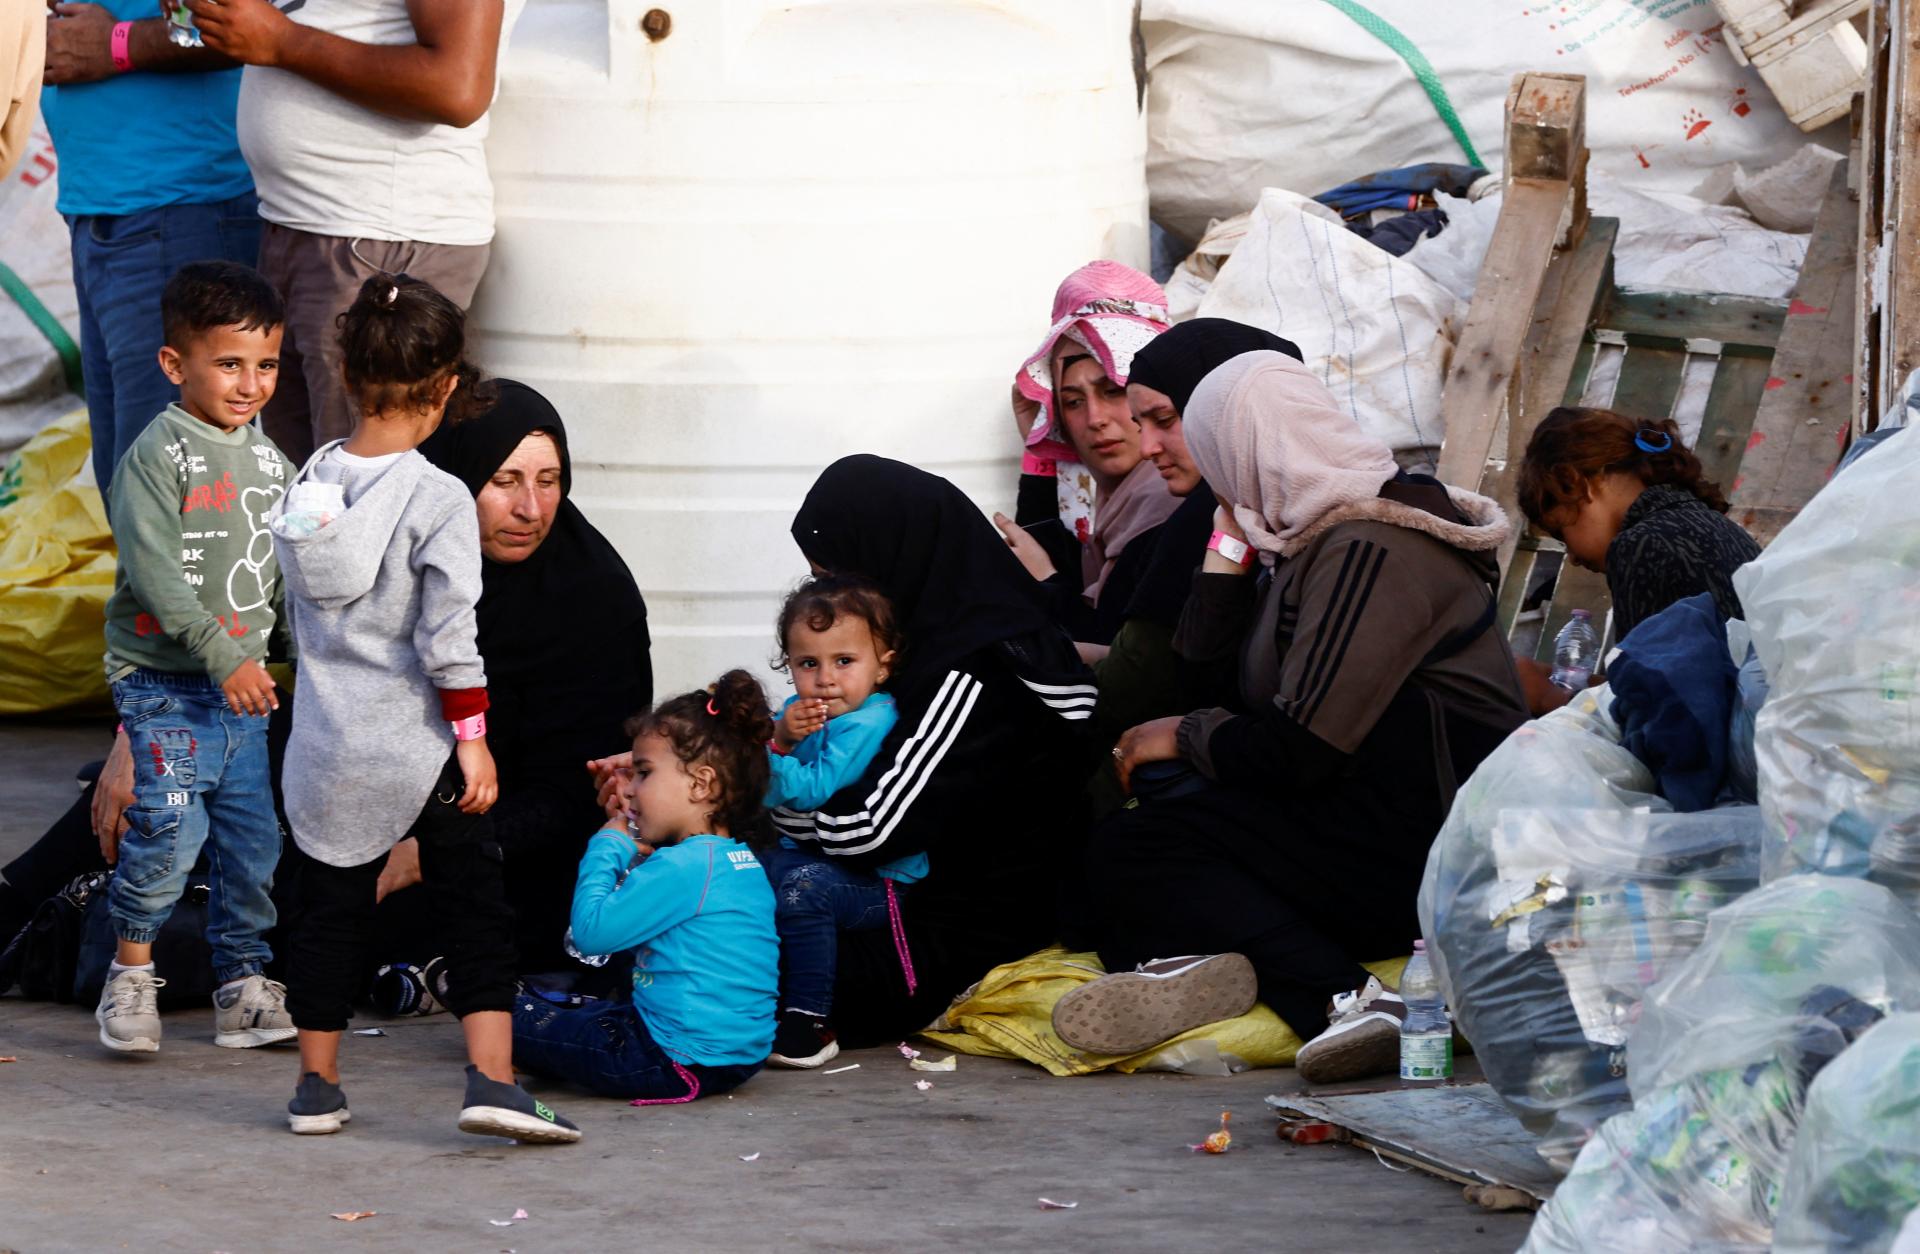 Priepustka z detencie za päťtisíc eur, ponúka Rím migrantom. Neľudské, znie z opozície